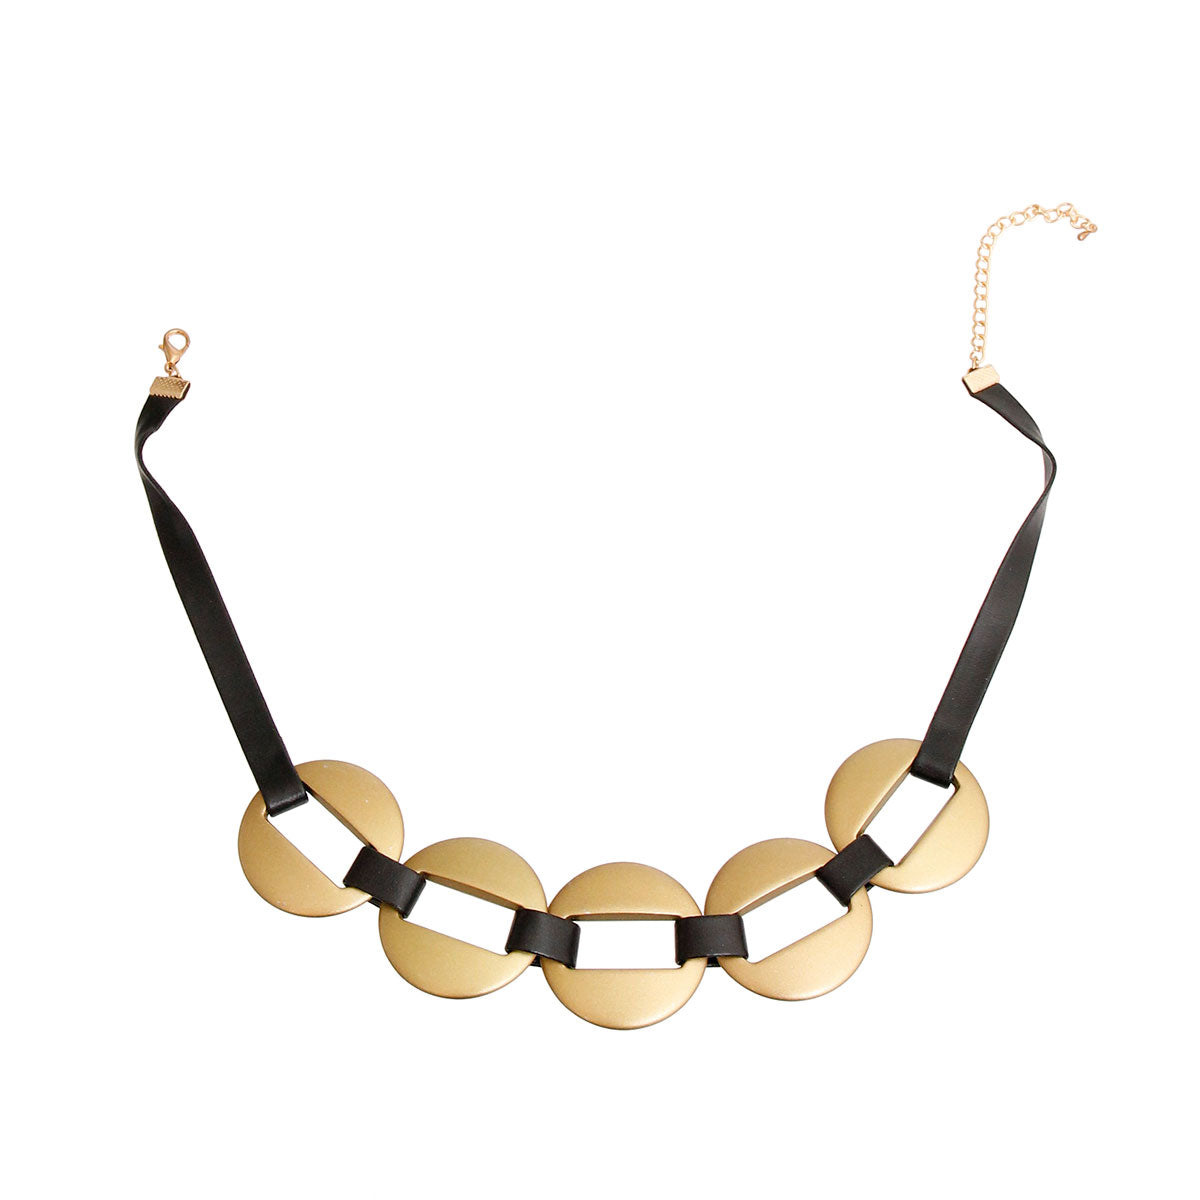 Matte Olive Black Leather Necklace